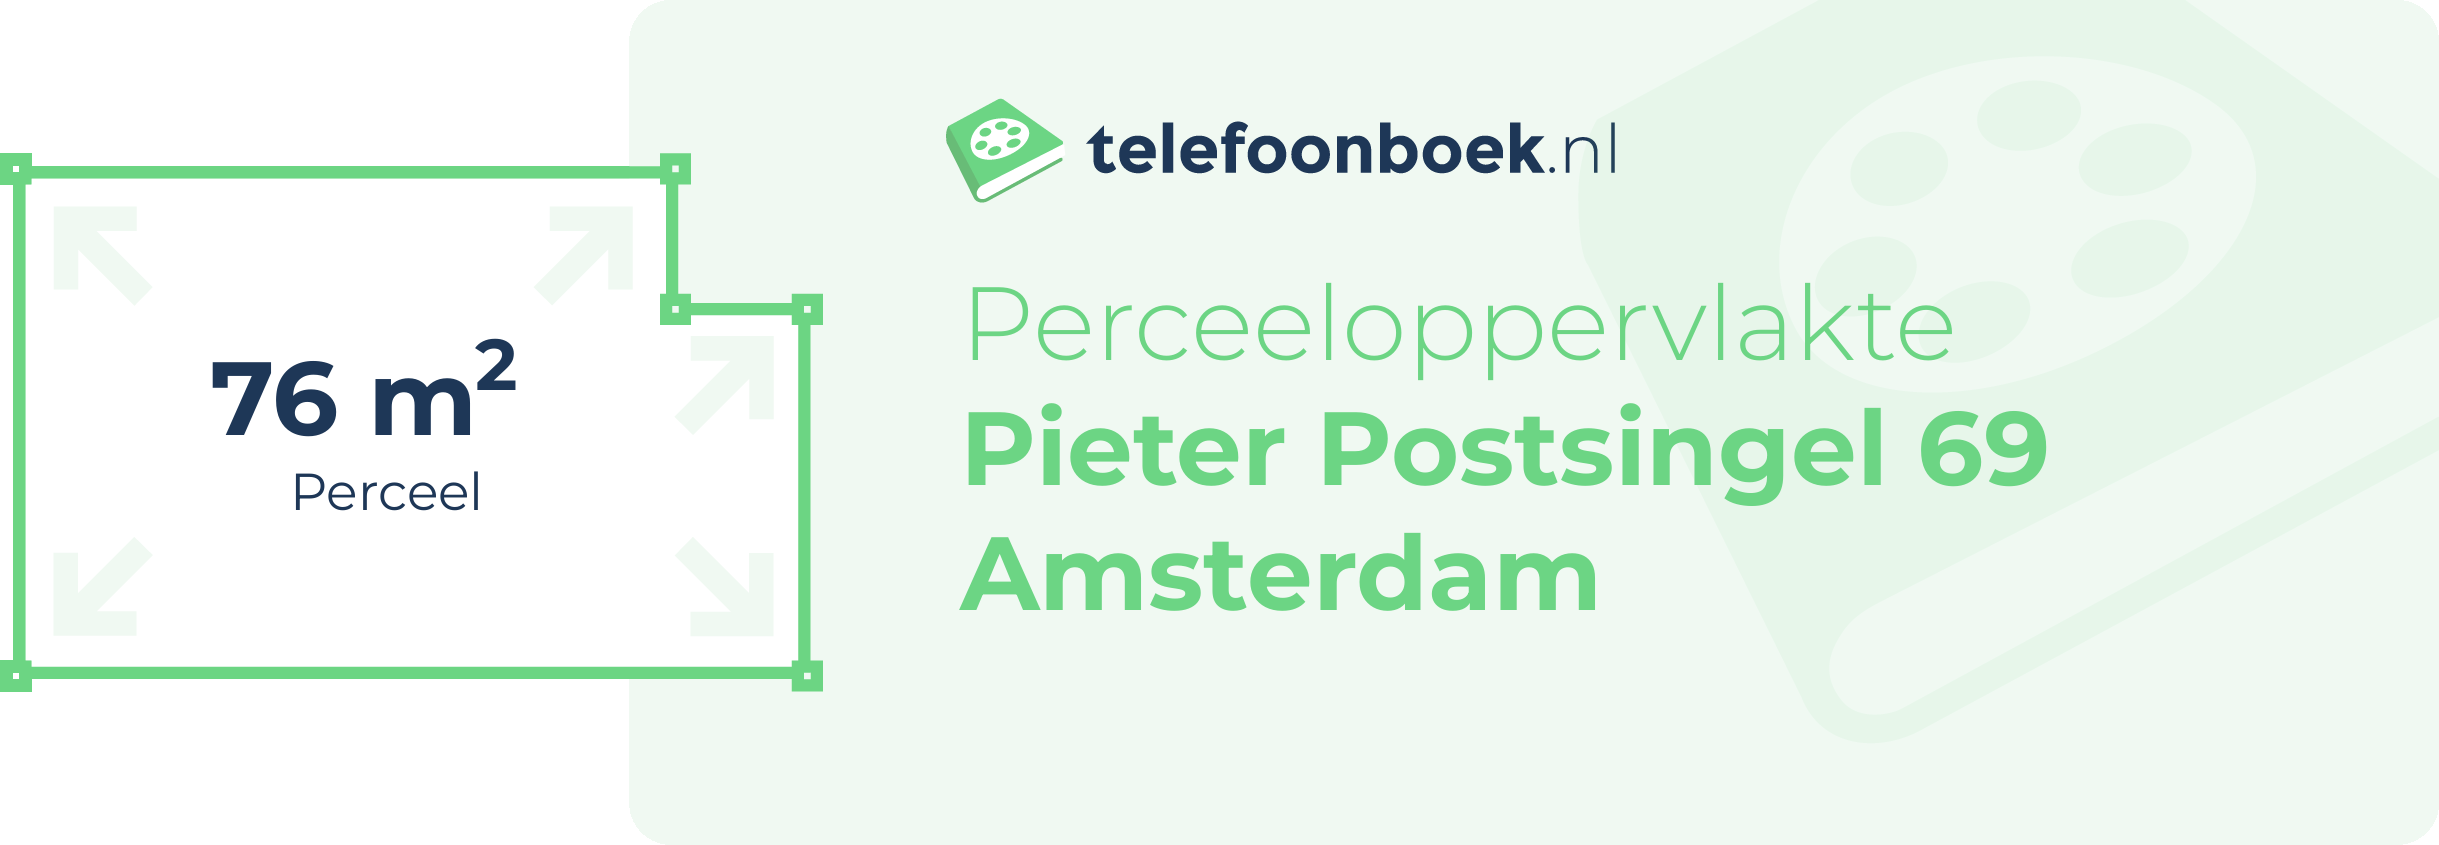 Perceeloppervlakte Pieter Postsingel 69 Amsterdam